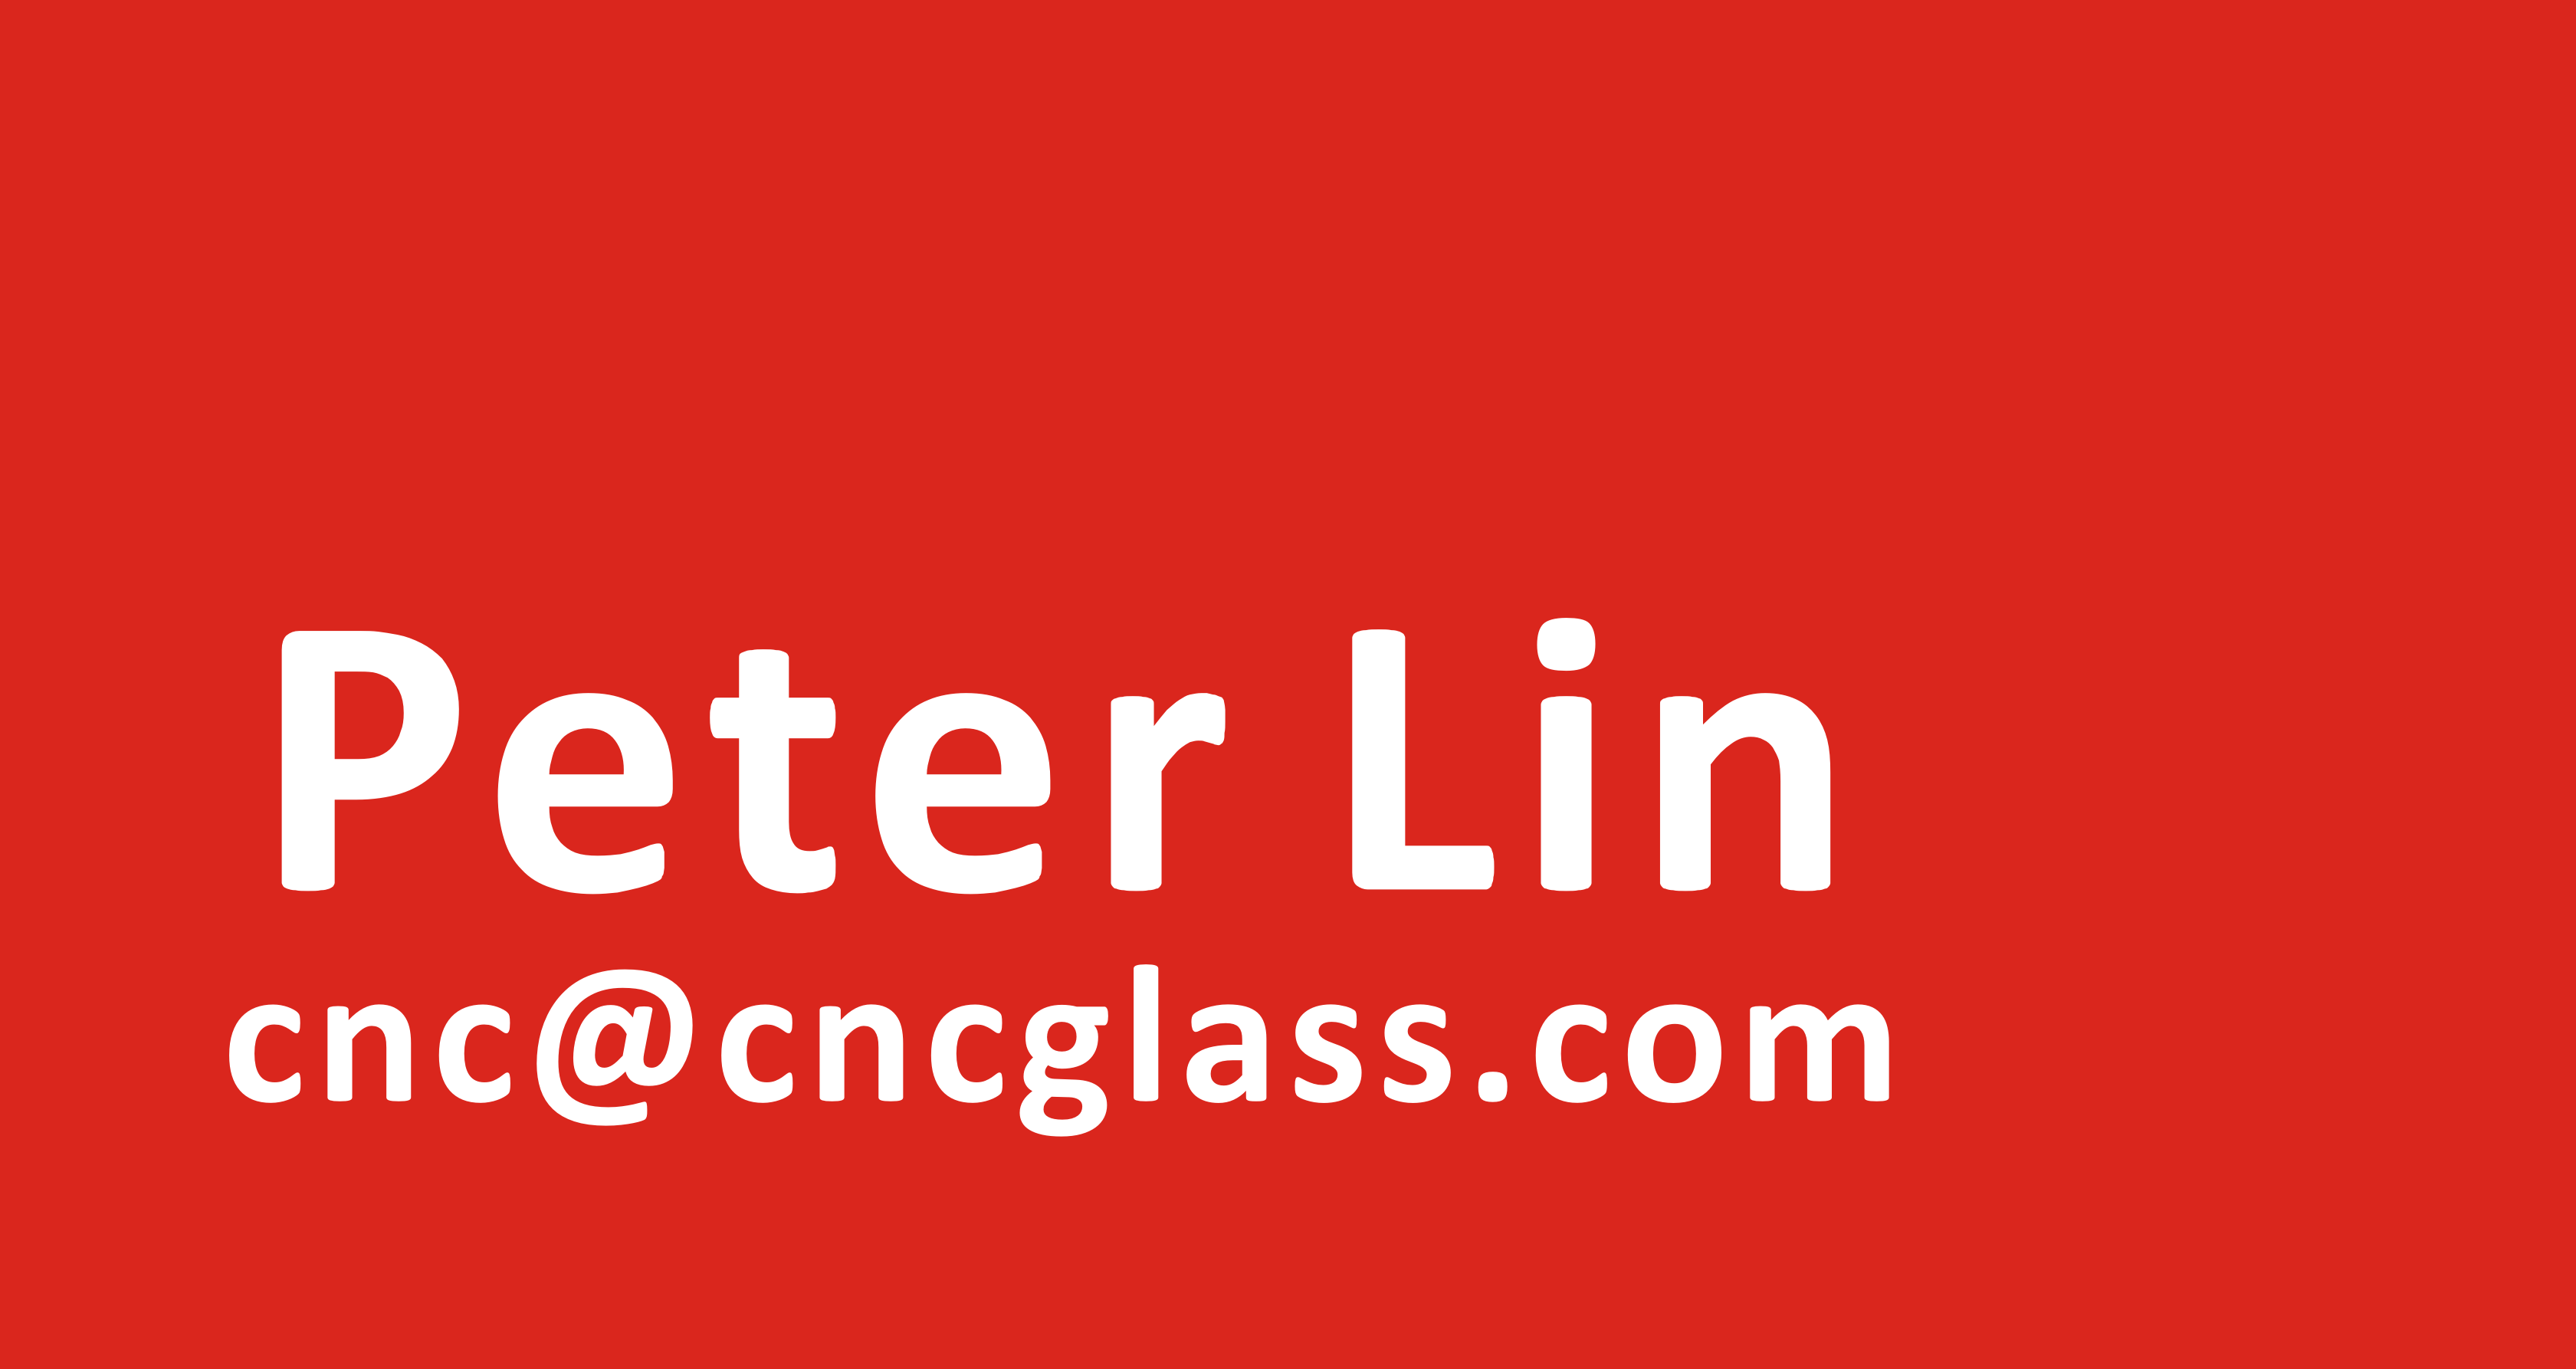 Peter Lin@CNCGLASS